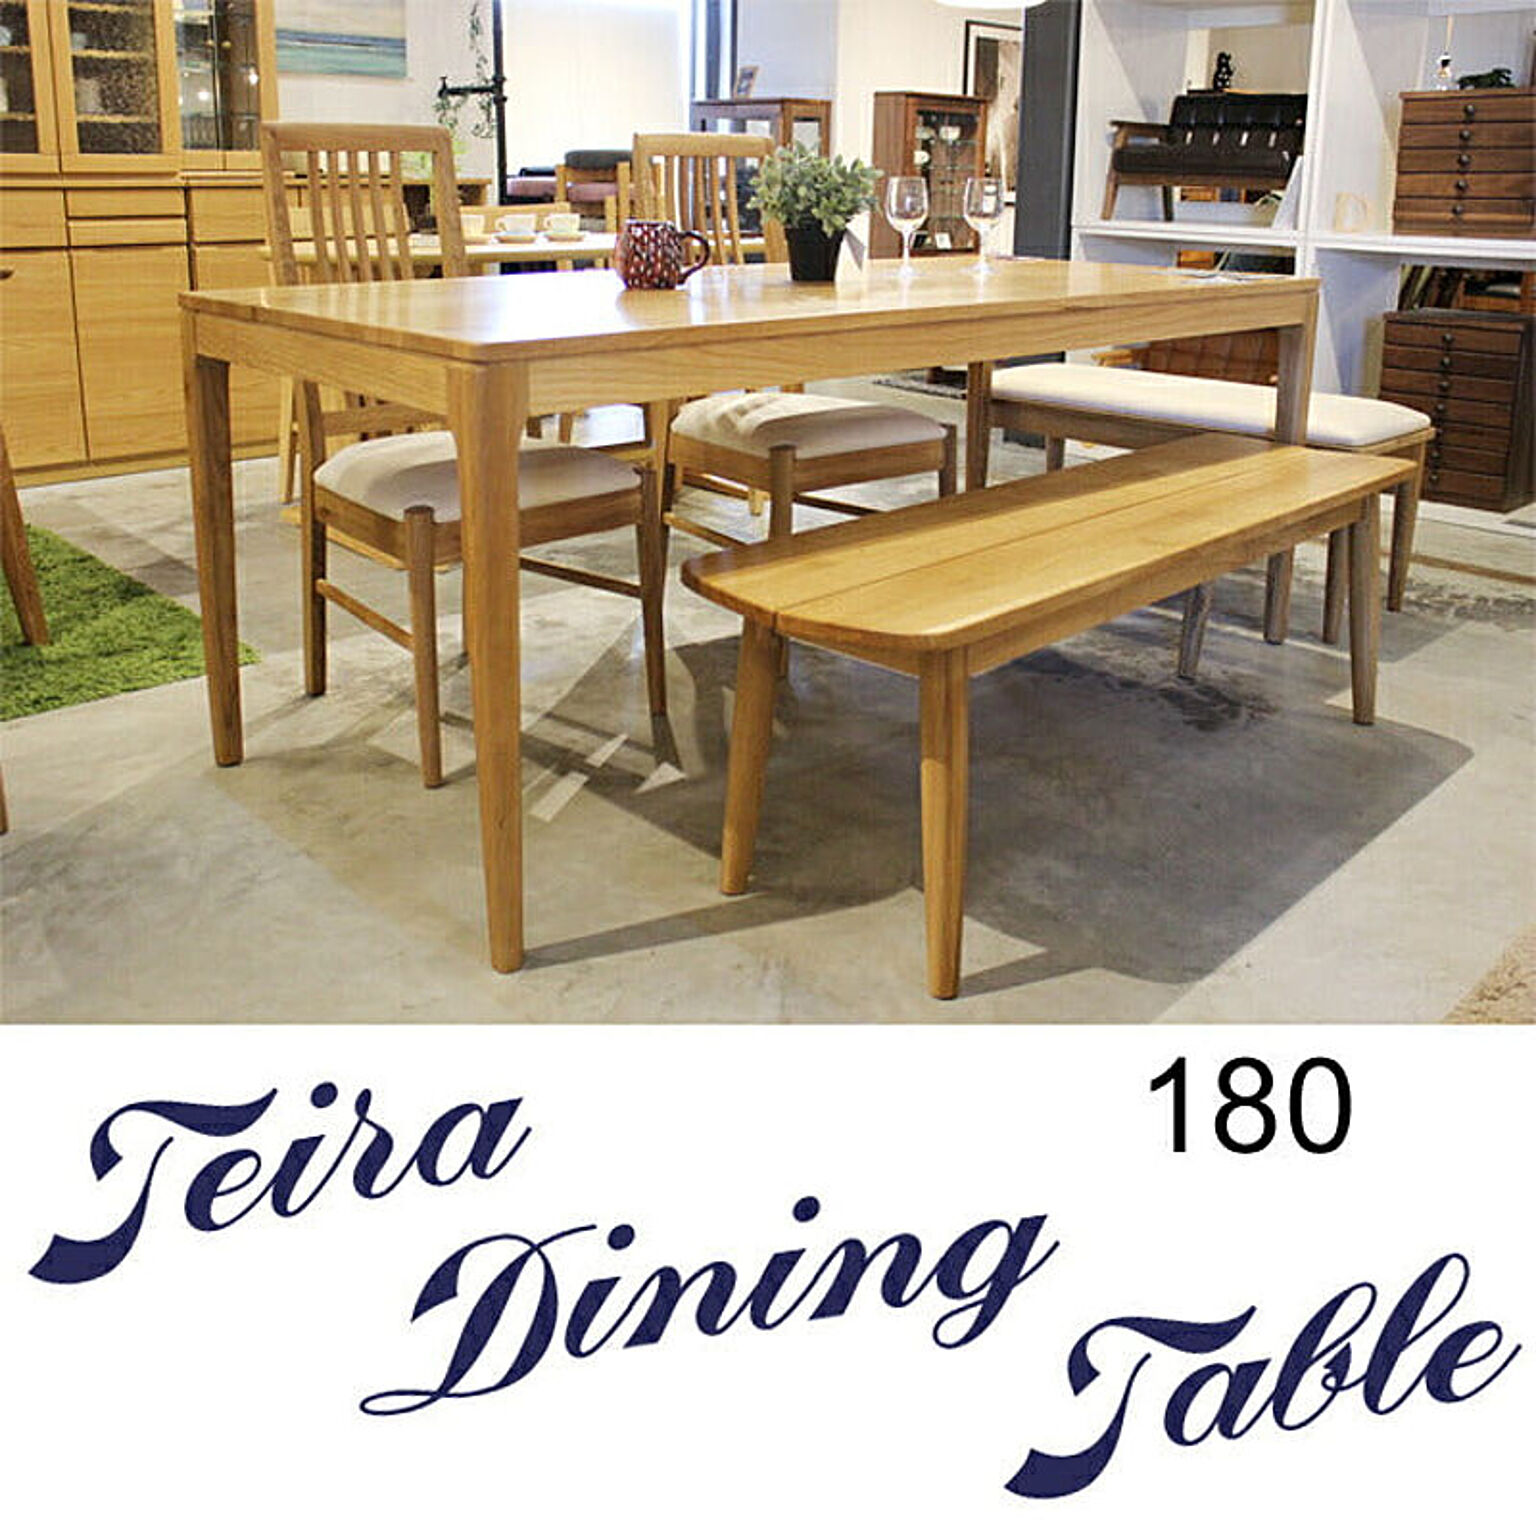 テーブル 机 おしゃれ 木製 180 無垢材 ダイニングテーブル モダン ウォールナット オーク 単品ダイニングテーブル 食卓 ラグジュアリー シンプル カフェ風 送料無料 ダイニングテーブルのみ